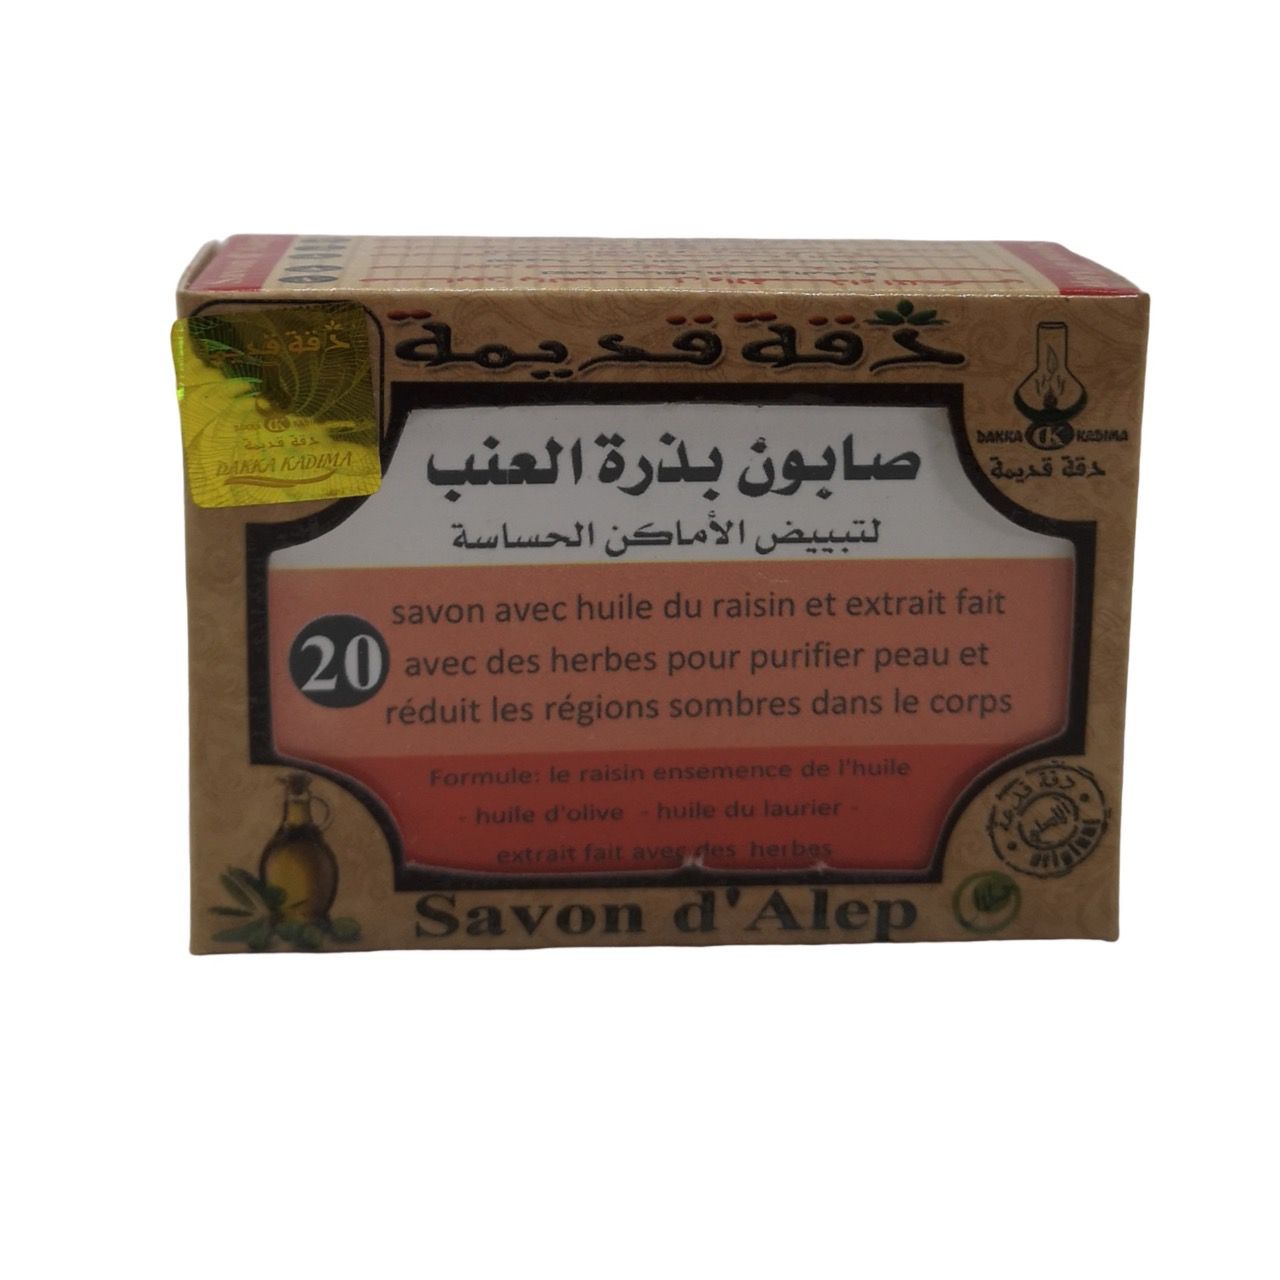 Savon d'Alep n°20 huile de raisin 100gr | DAKKA KADIMA 